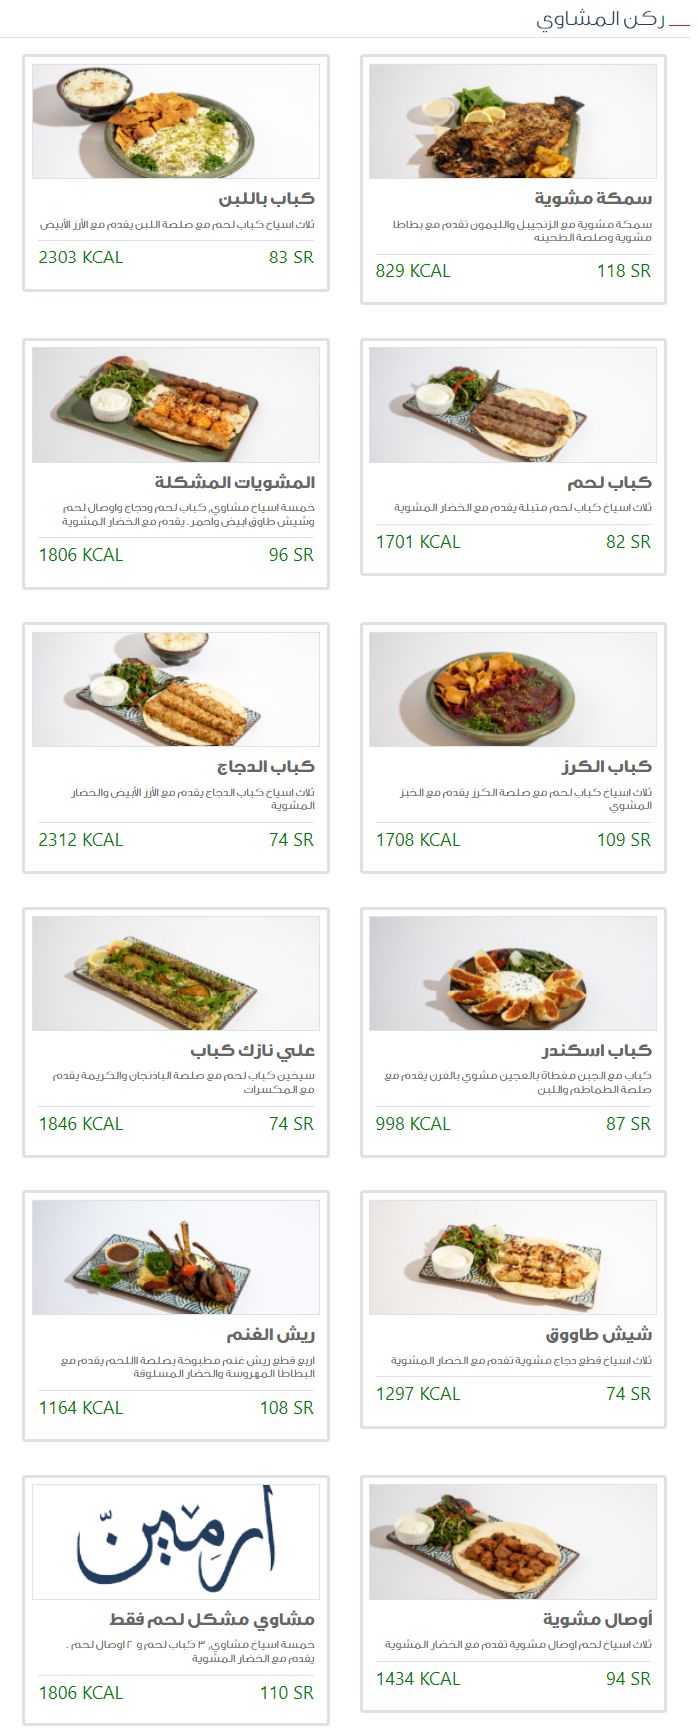 8 2 مطعم ارمين السعودية | منيو + فروع + اسعار